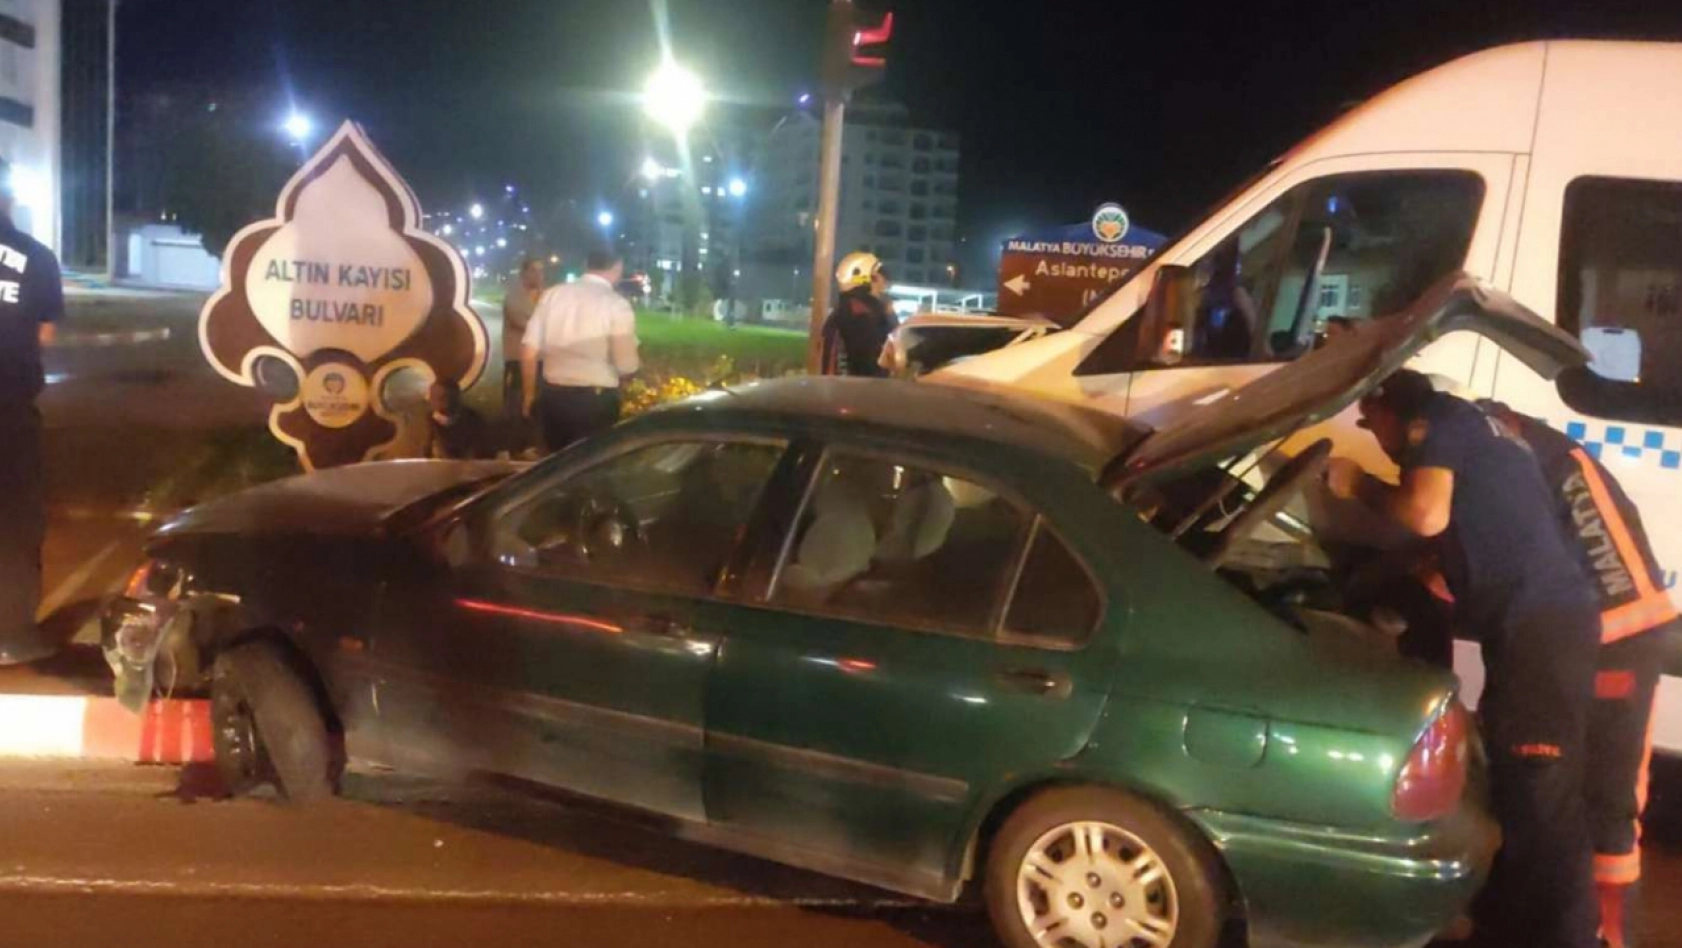 Malatya'da otomobil ile minibüs çarpıştı: 1 yaralı